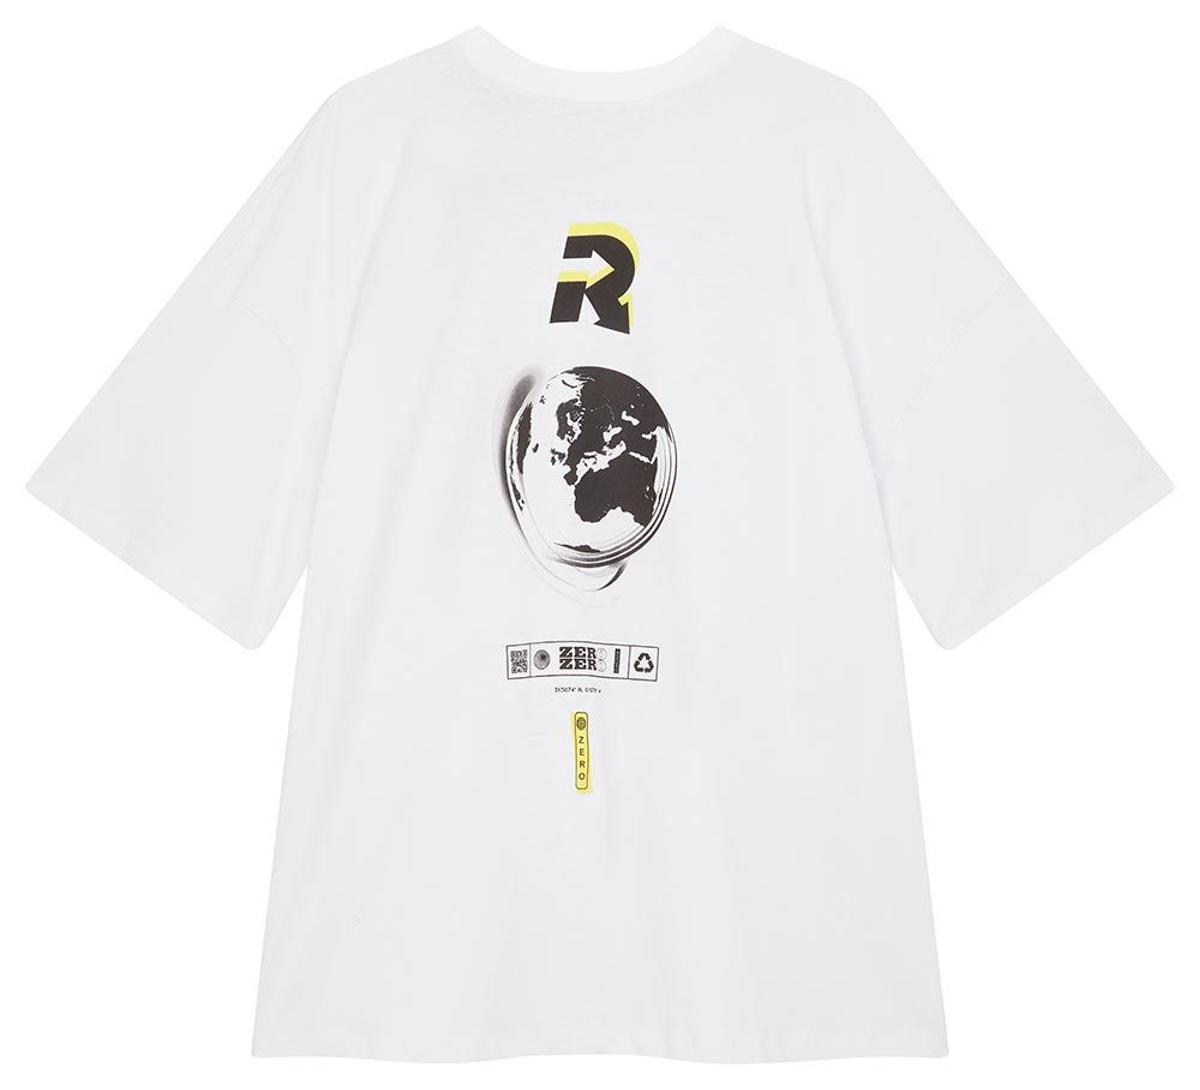 Camiseta reversible de la colección 'circular fashion' de Asos. (Precio: 19,85 euros)